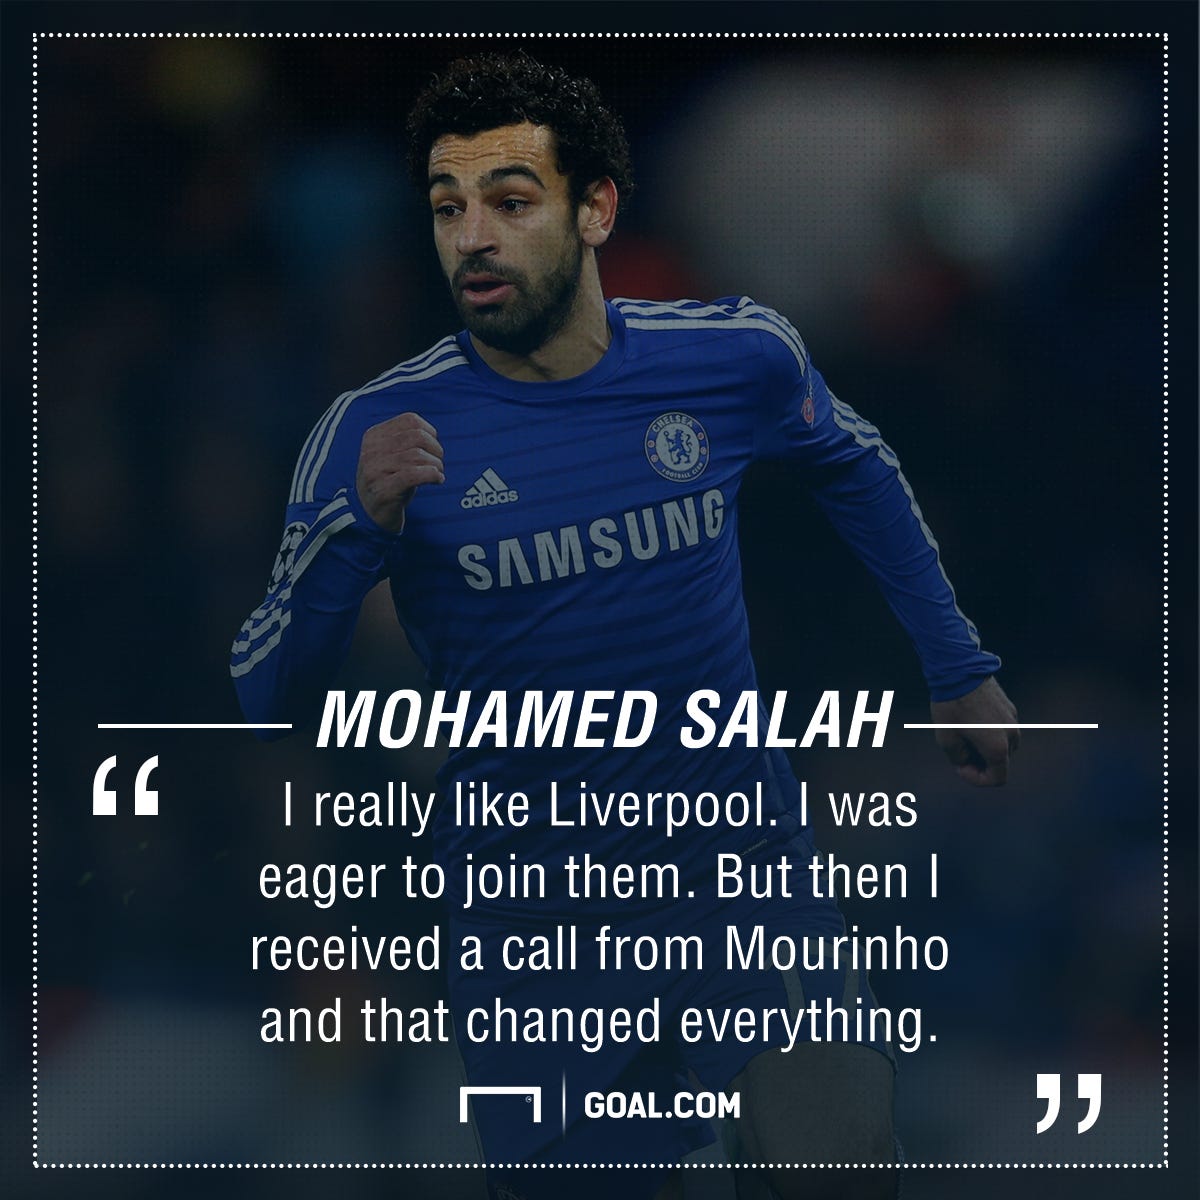 Salah: Eu sempre quis provar que o Chelsea estava errado